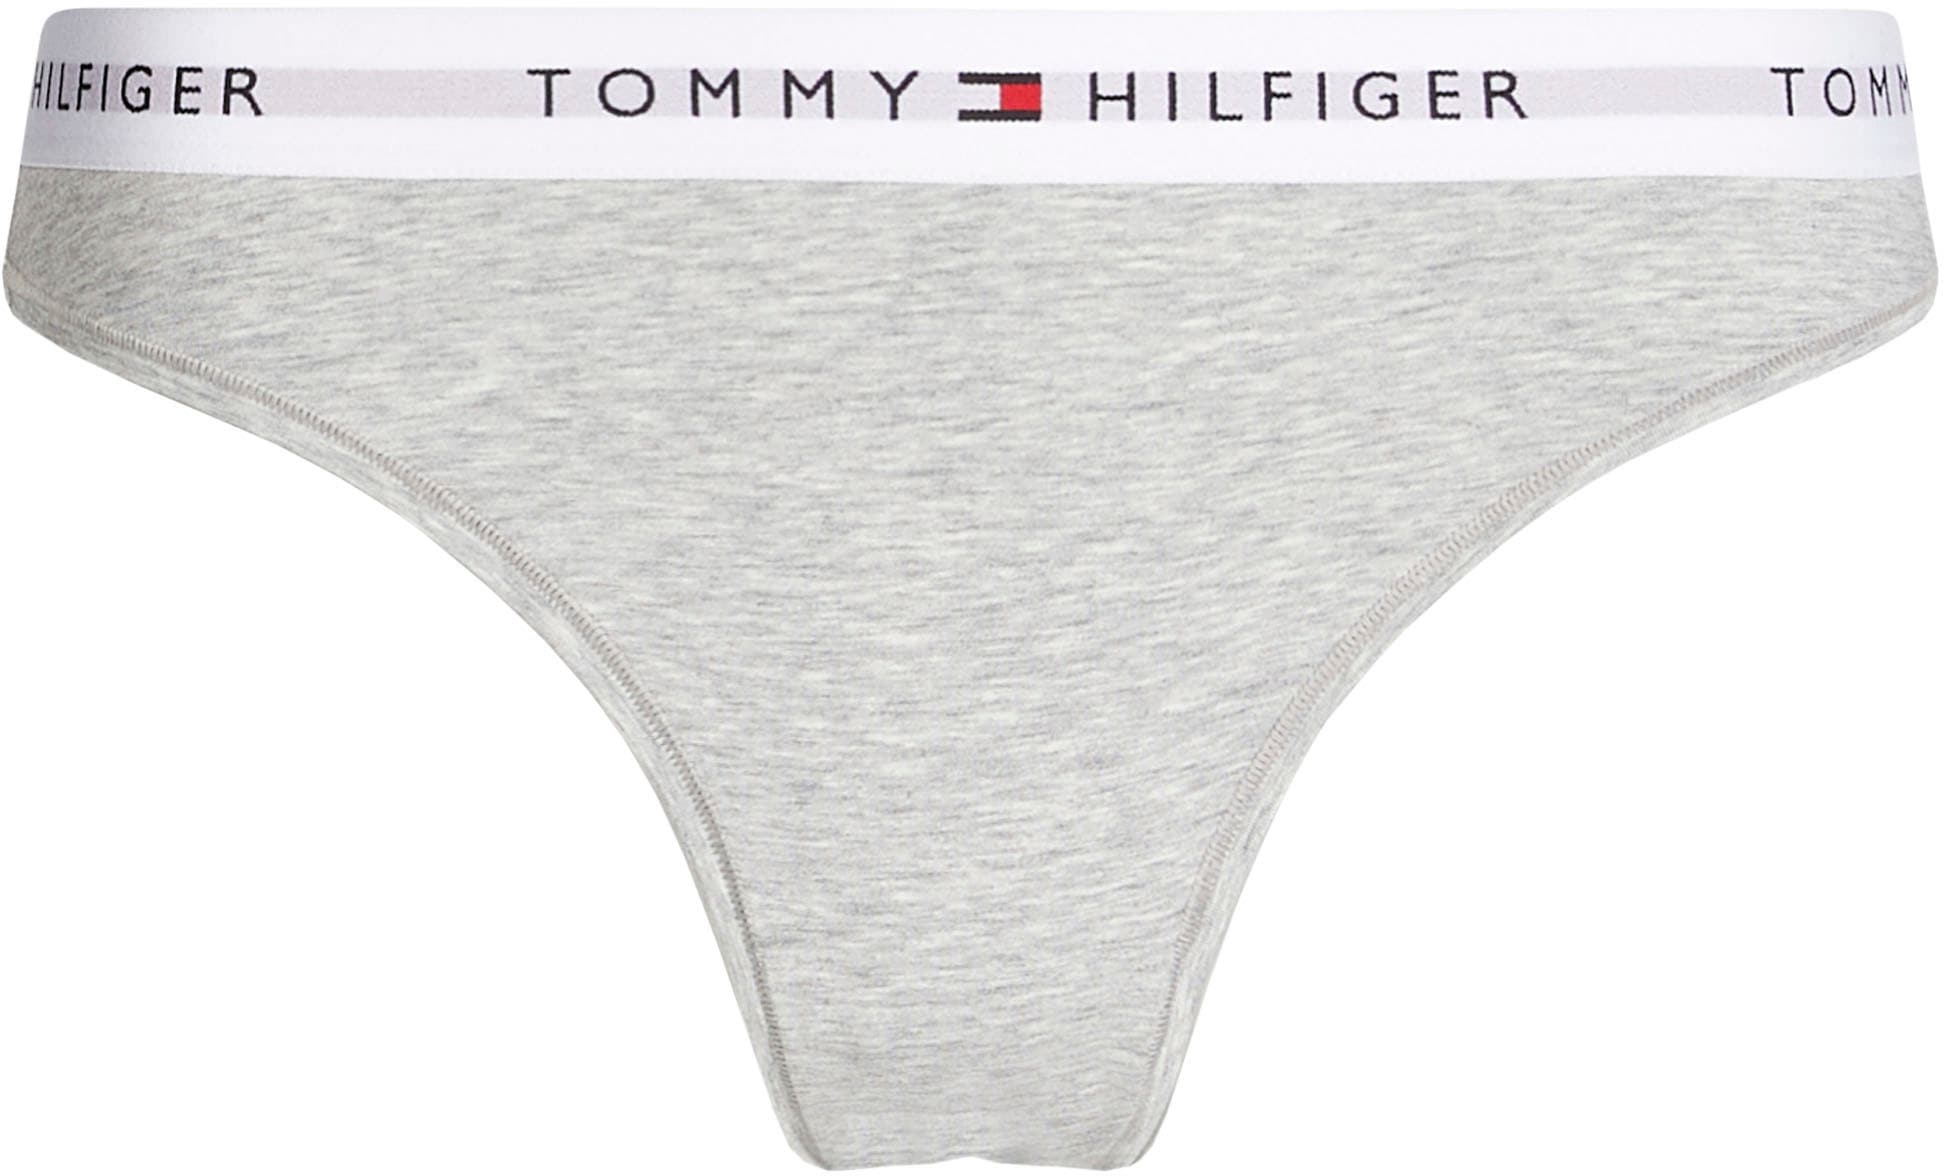 Bikinislip, Hilfiger Shop Tommy auf dem Logo im Taillenbund mit Online Underwear bestellen OTTO